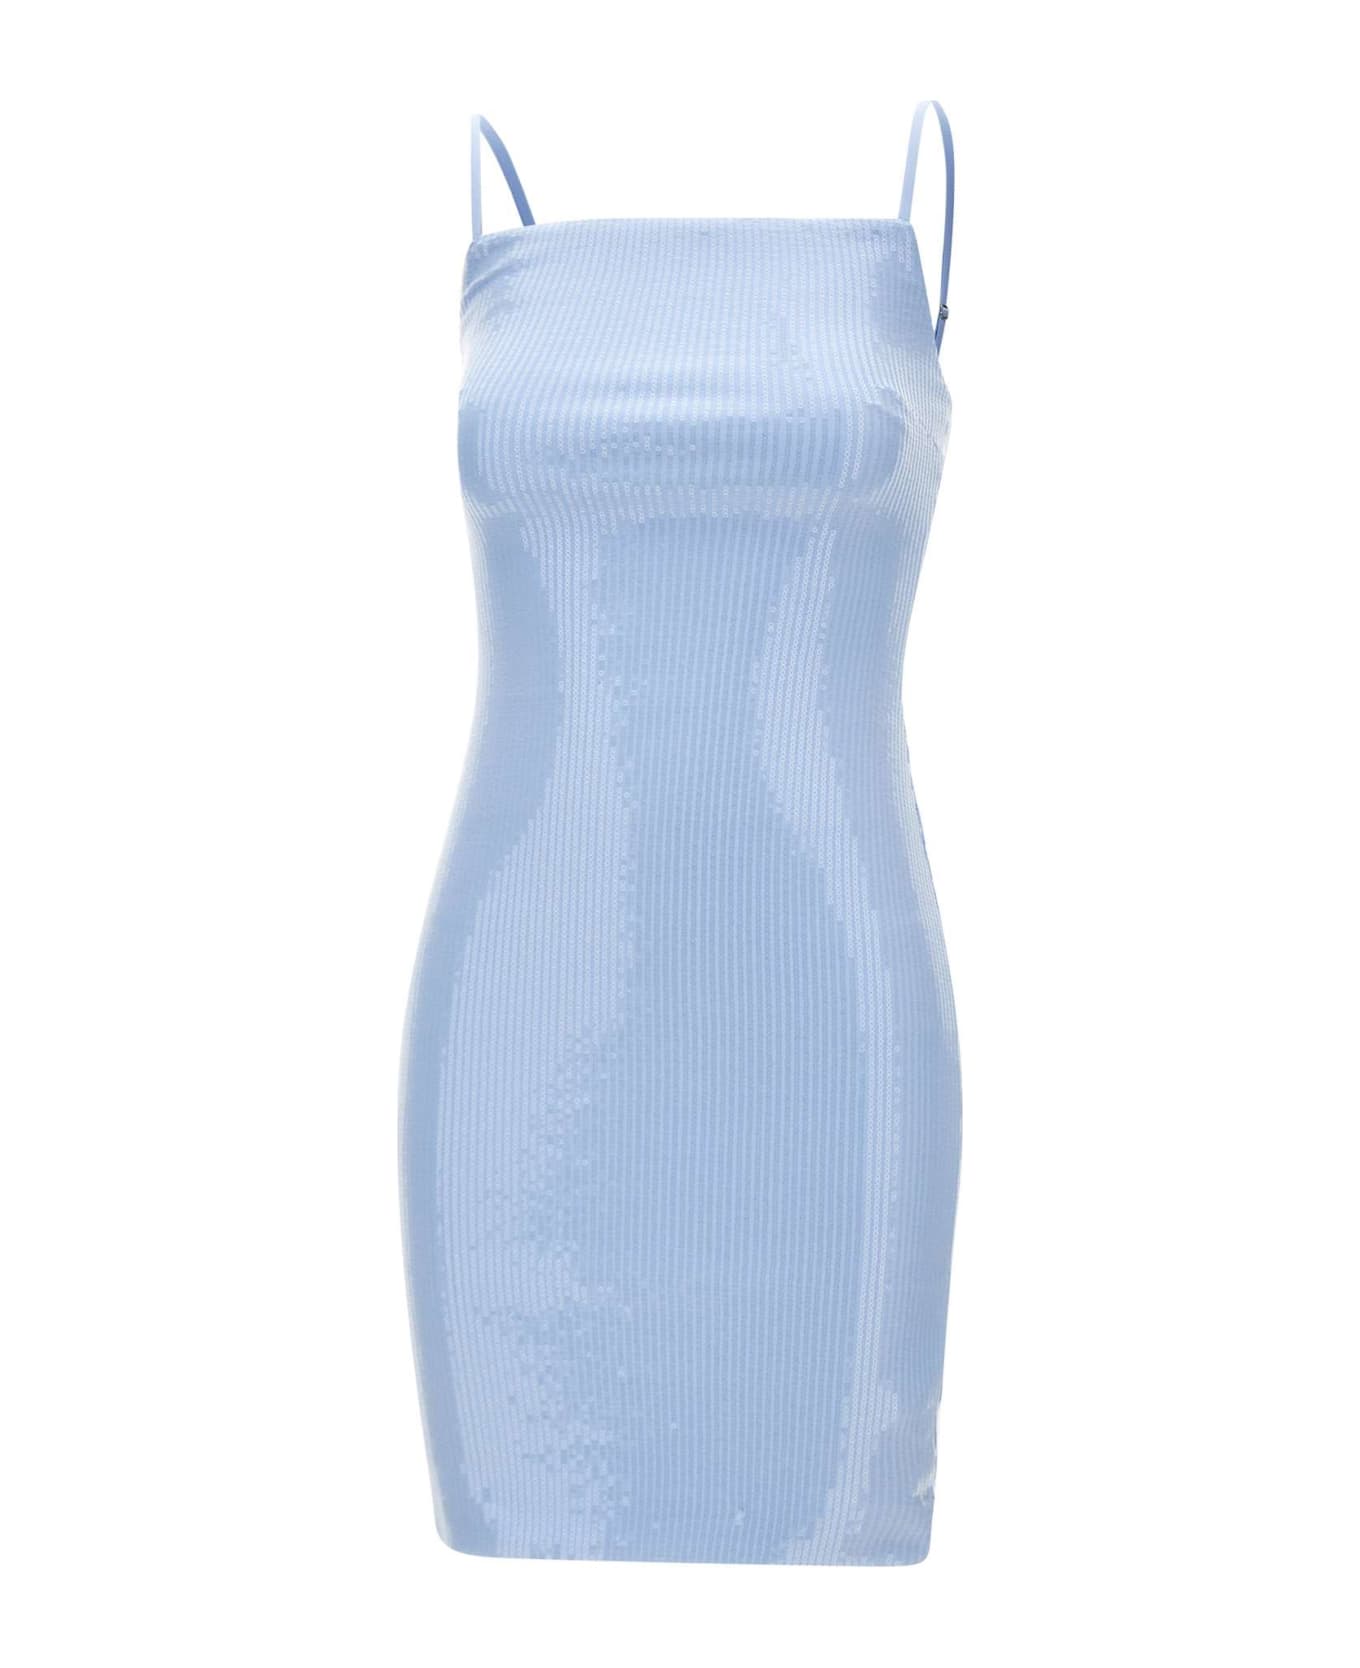 Rotate by Birger Christensen "sequins Slip" Mini Dress - LIGHT BLUE